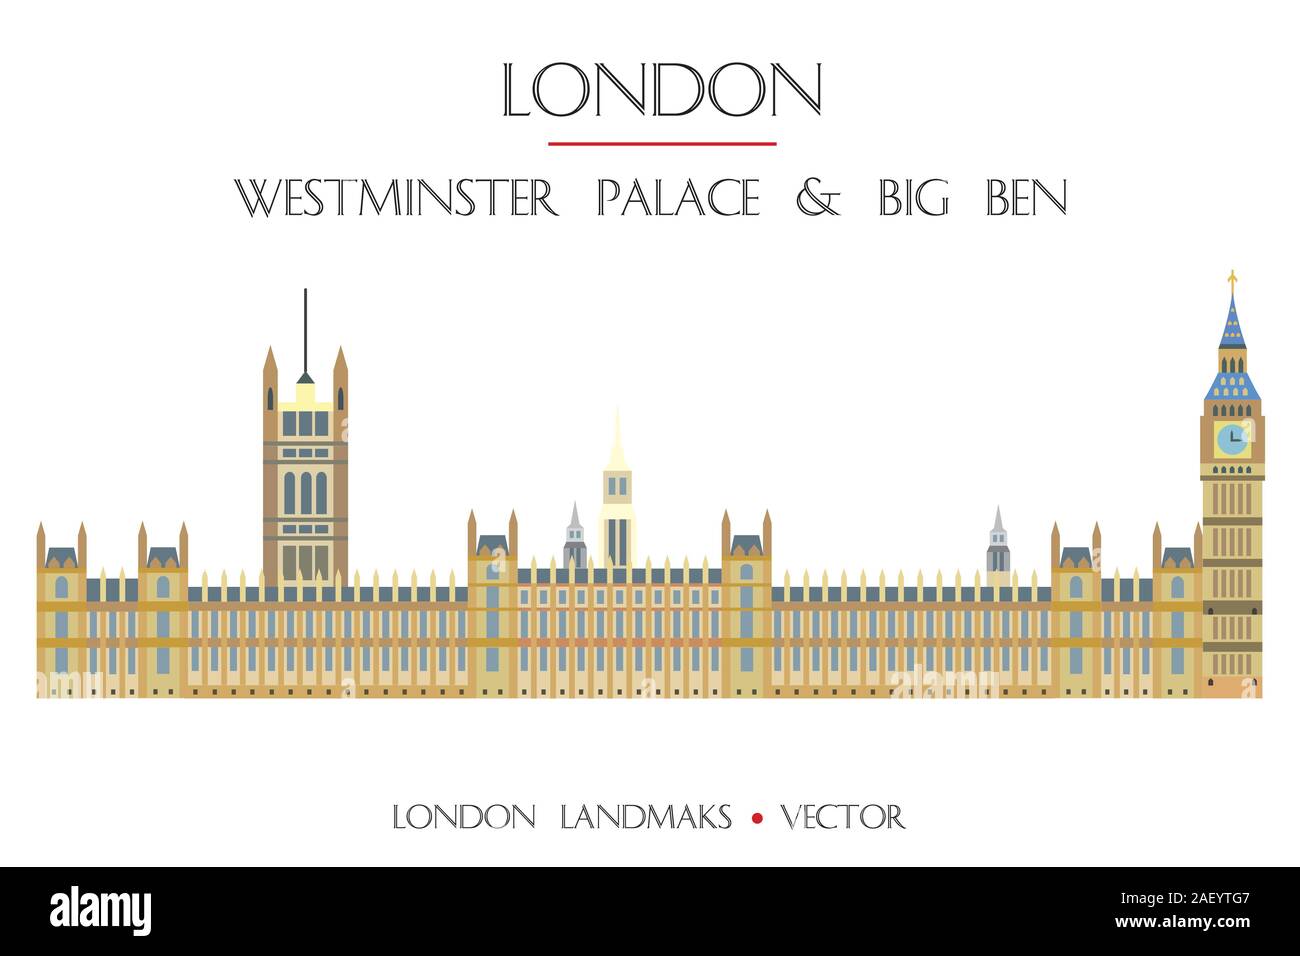 Bunte vektor Westminster Palace und Big Ben, Wahrzeichen von London, England. Vektor flachbild Abbildung auf weißem Hintergrund. Lieferbar illus Stock Vektor